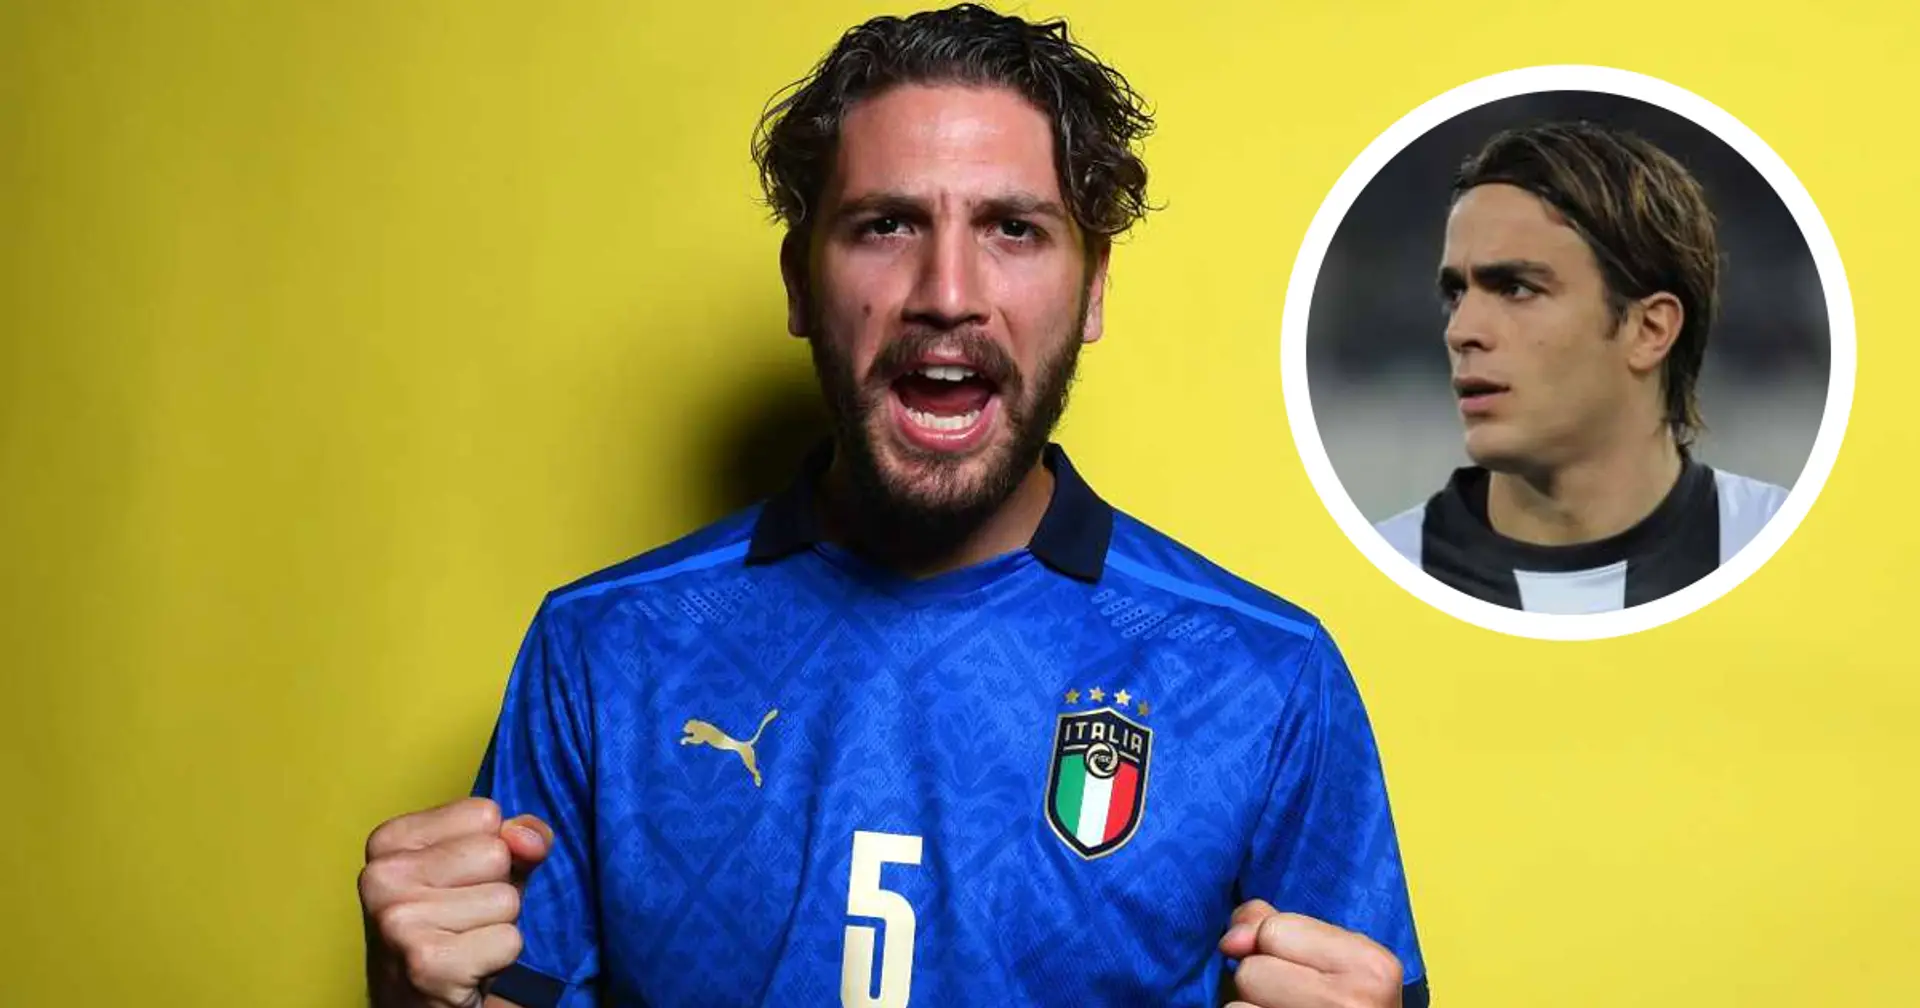 "Locatelli? Il migliore con cui io abbia giocato!": l'ex Matri incorona il nuovo acquisto della Juventus